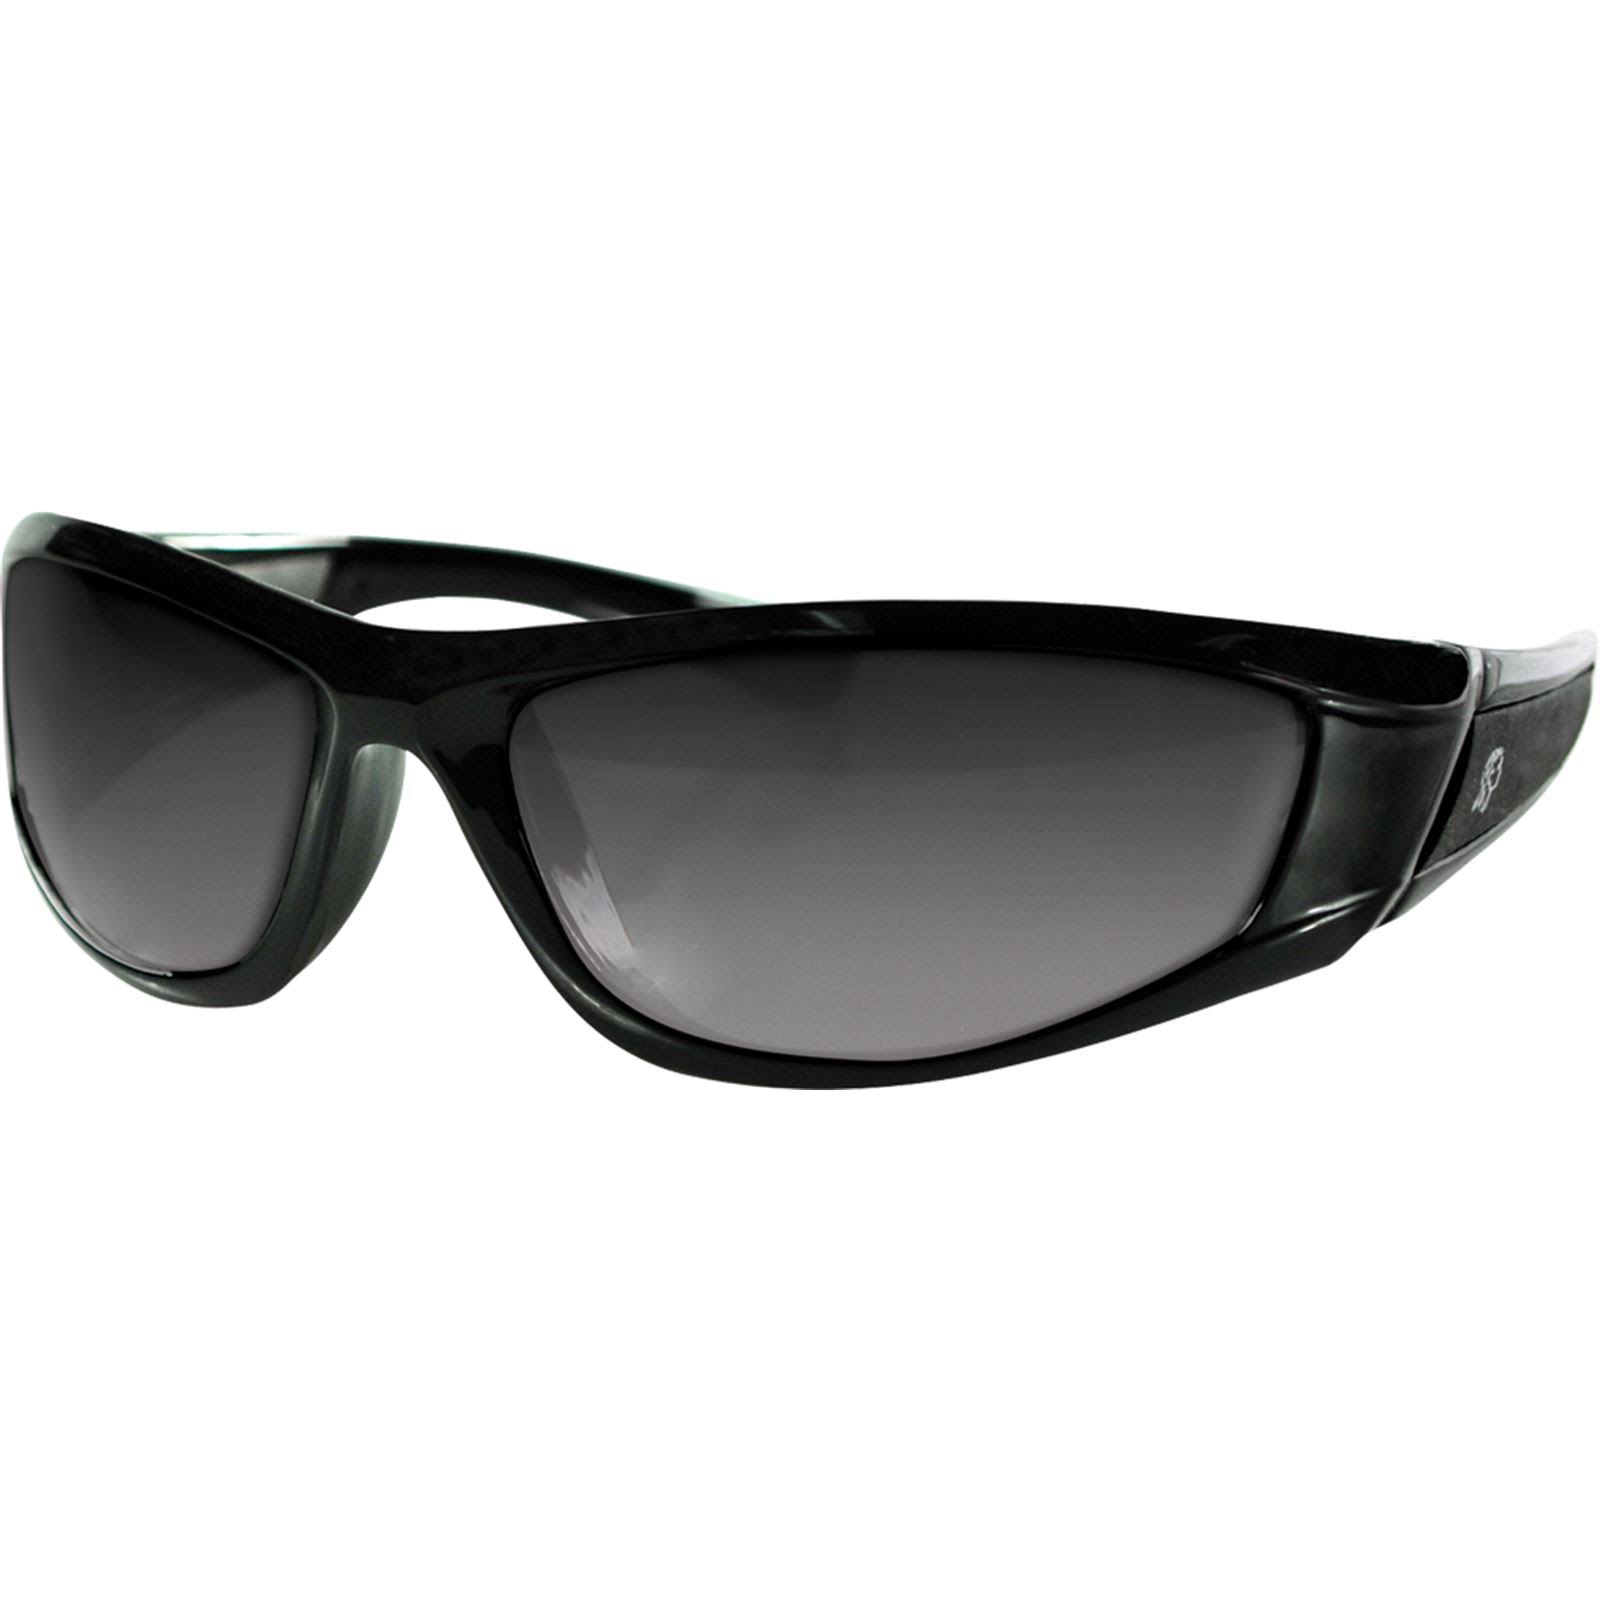 Zan Headgear Iowa Sunglass - Shiny Black Frame, Smoked Lenses